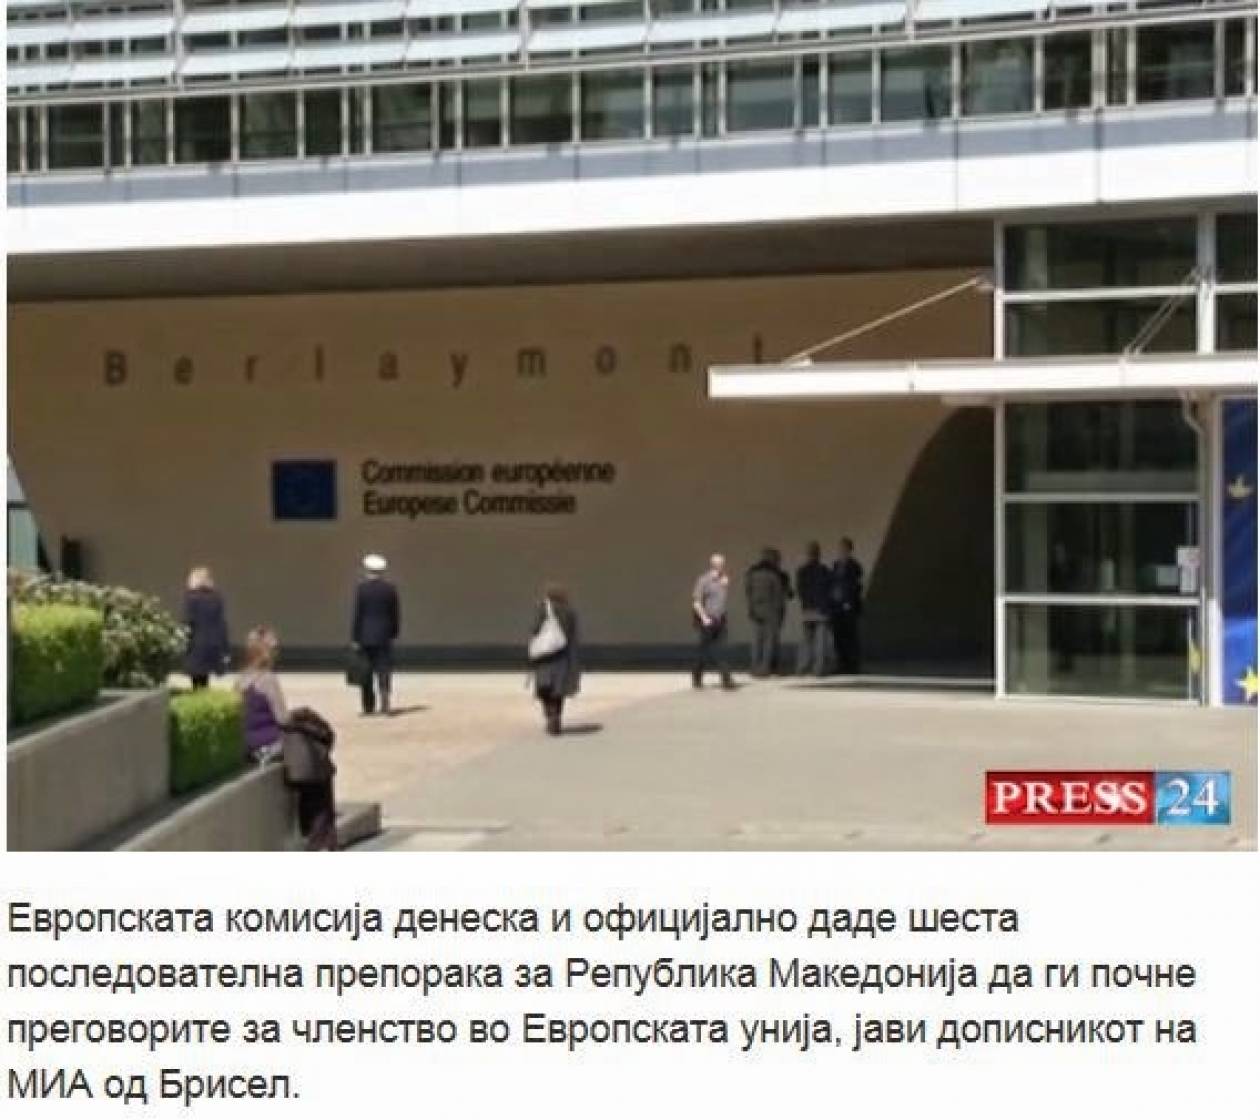 Έκτη σύσταση στα Σκόπια για διαπραγματεύσεις με ΕΕ